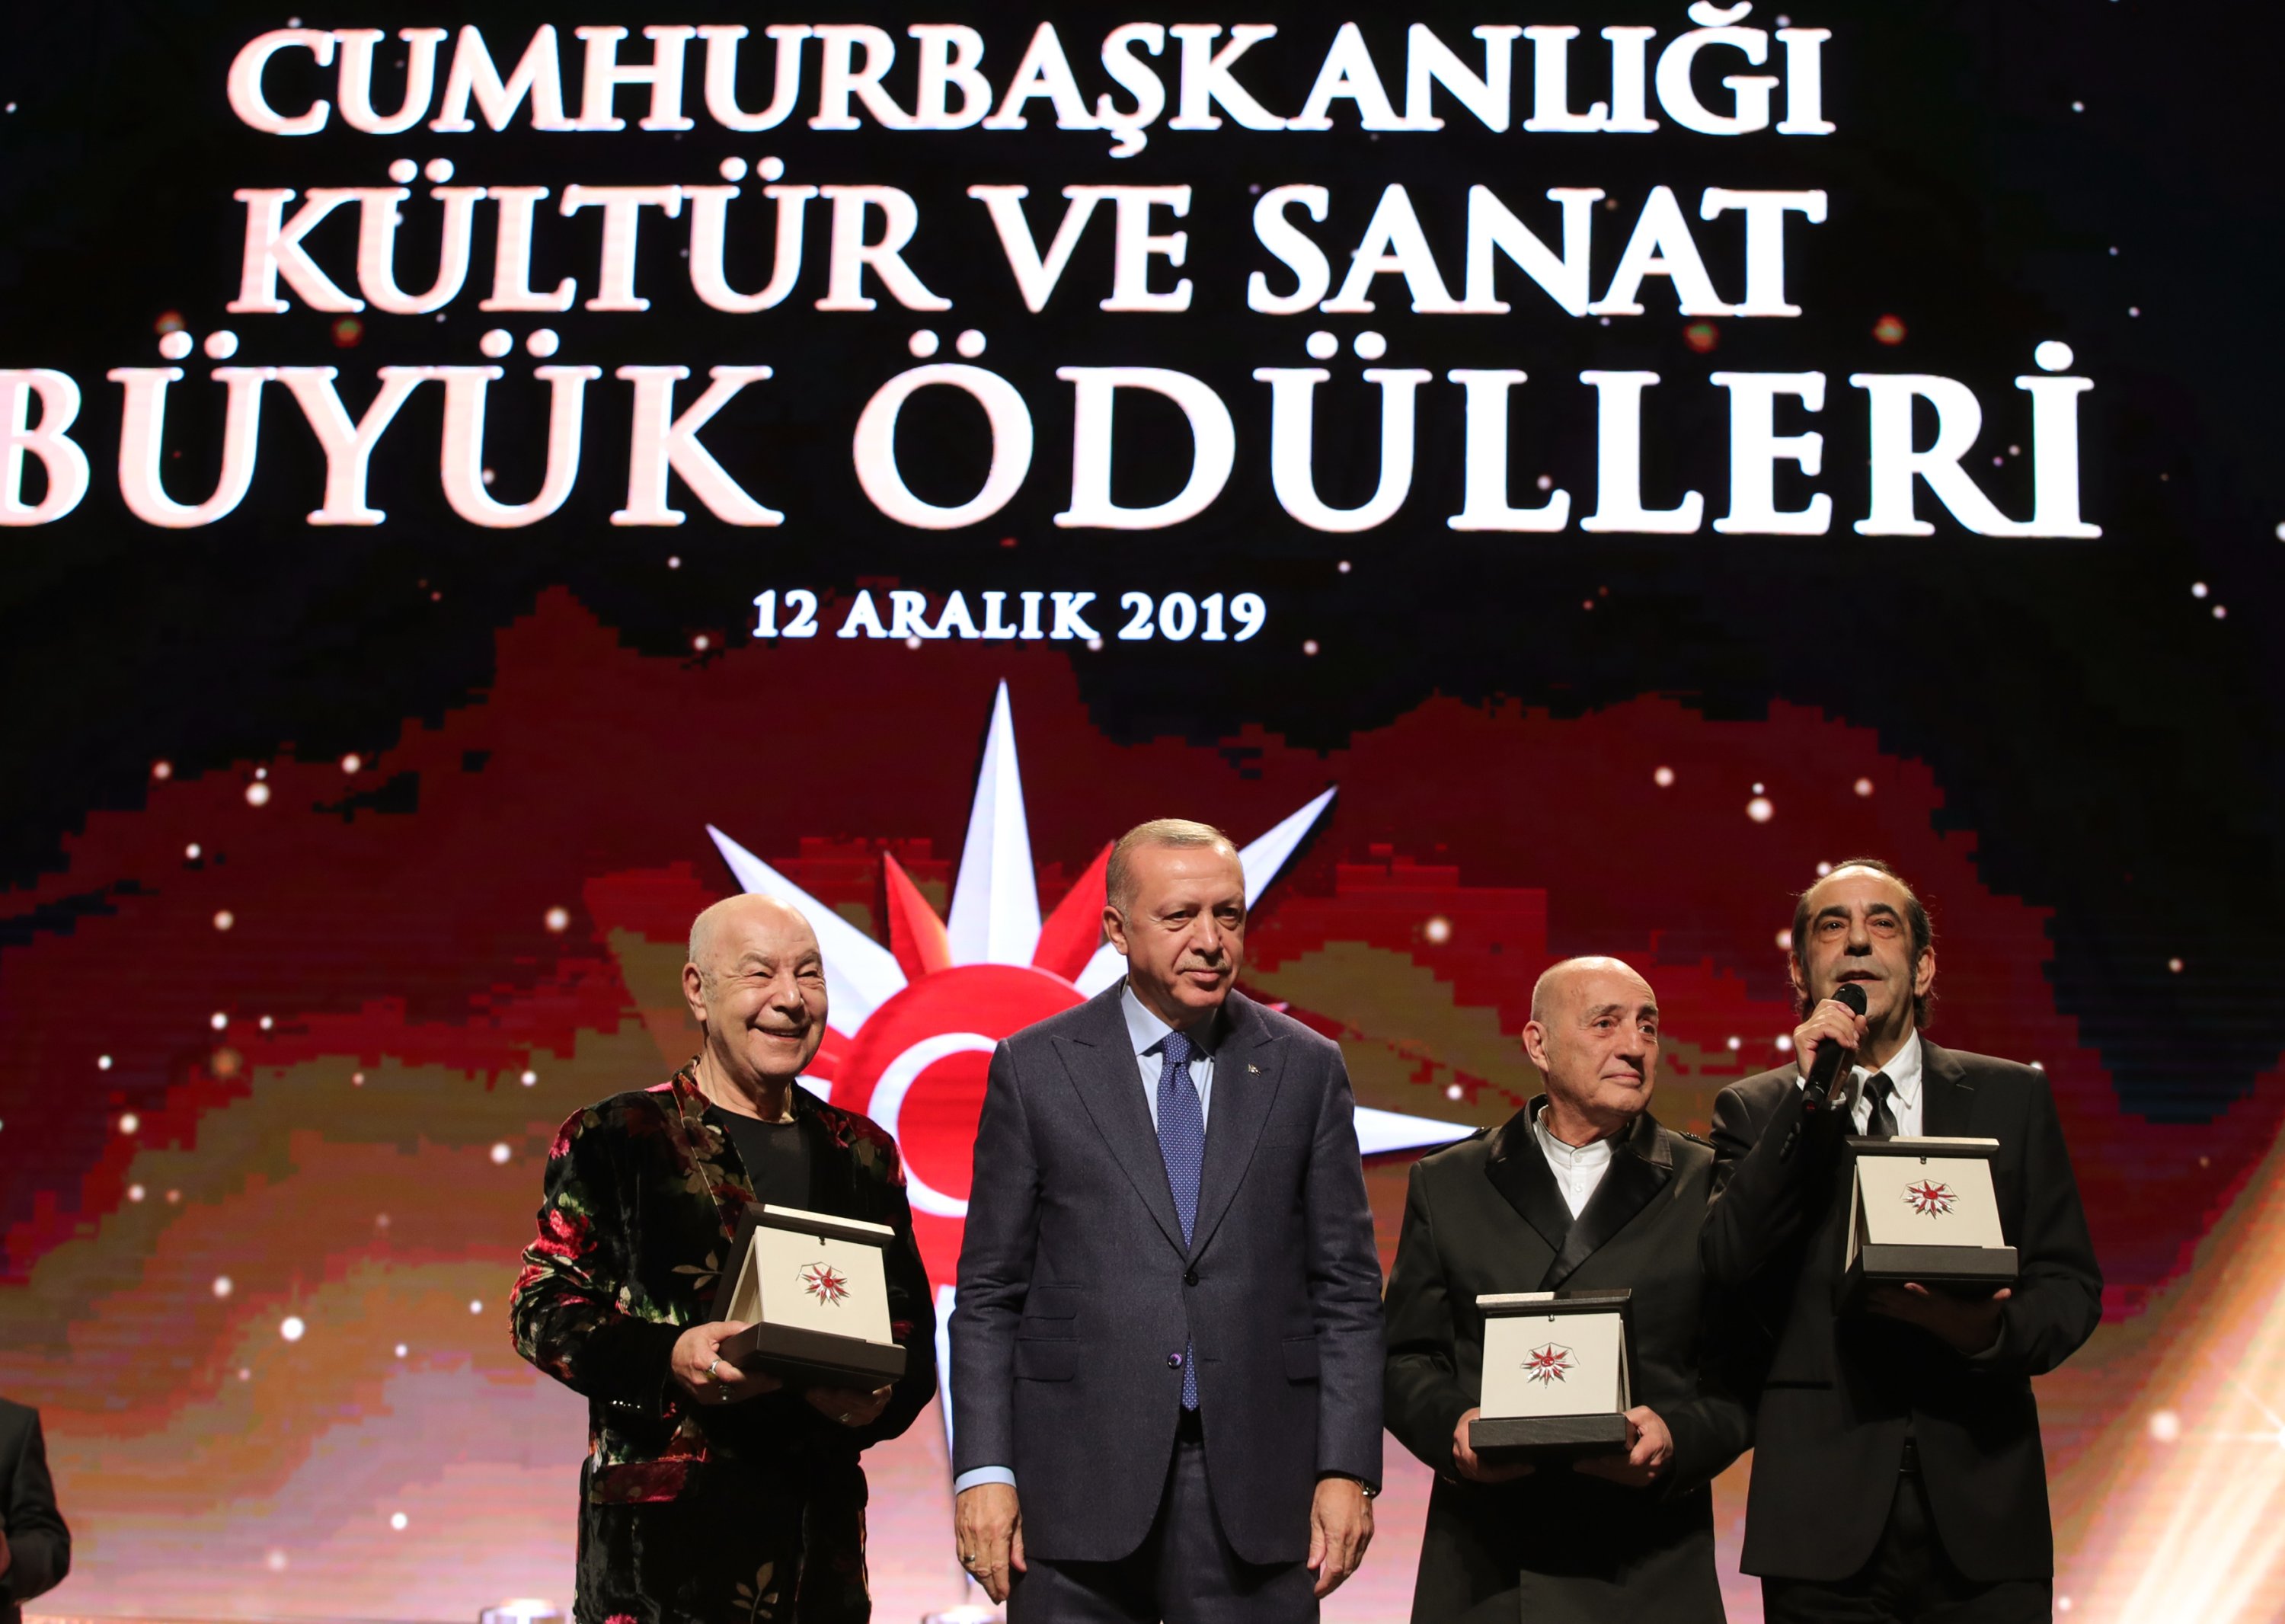 Presiden Recep Tayyip Erdoğan menyerahkan penghargaan kepada grup MFÖ, yang terdiri dari Mazhar Alanson, Fuat Güner, dan Özkan Uğur, yang dianggap layak menerima penghargaan di bidang 'Musik,' Istanbul, Türkiye, 12 Desember 2019. ( Foto AA)